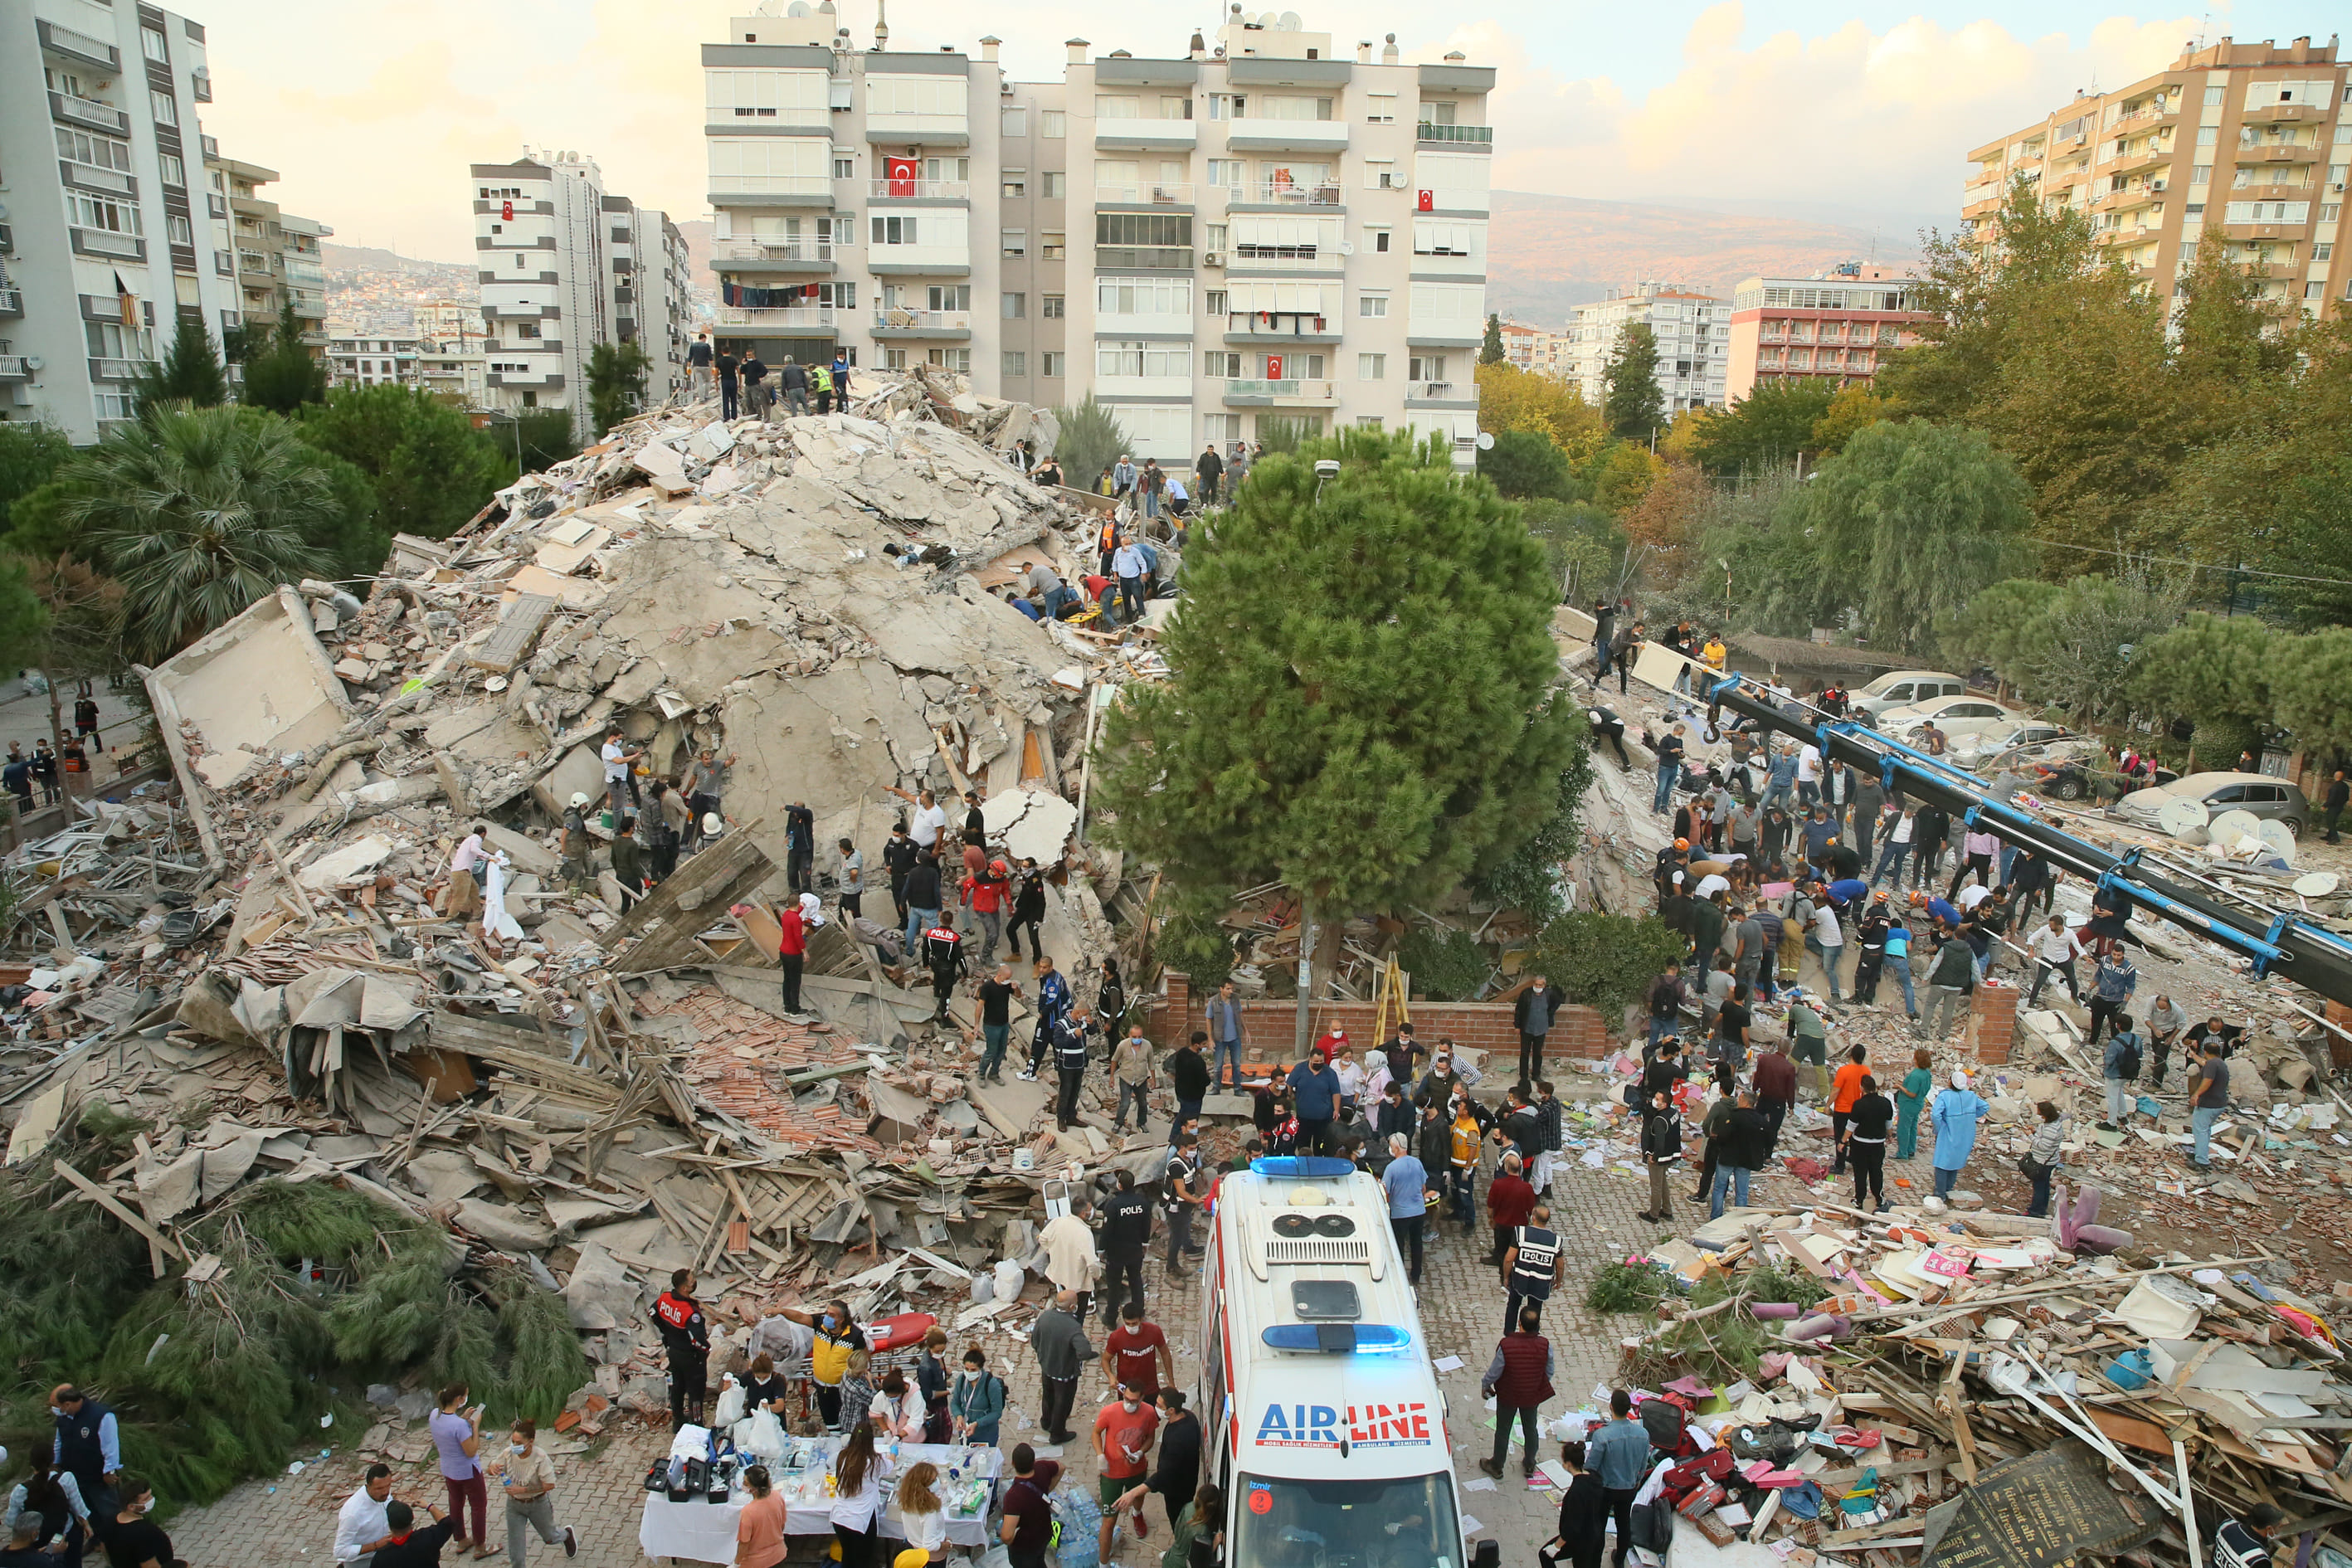 Самые сильные землетрясения происходят. Измир Турция землетрясение 2020. Измит Турция 1999 землетрясение. Измир Турция землетрясение 1999. Землетрясение в Турции 1999 год.